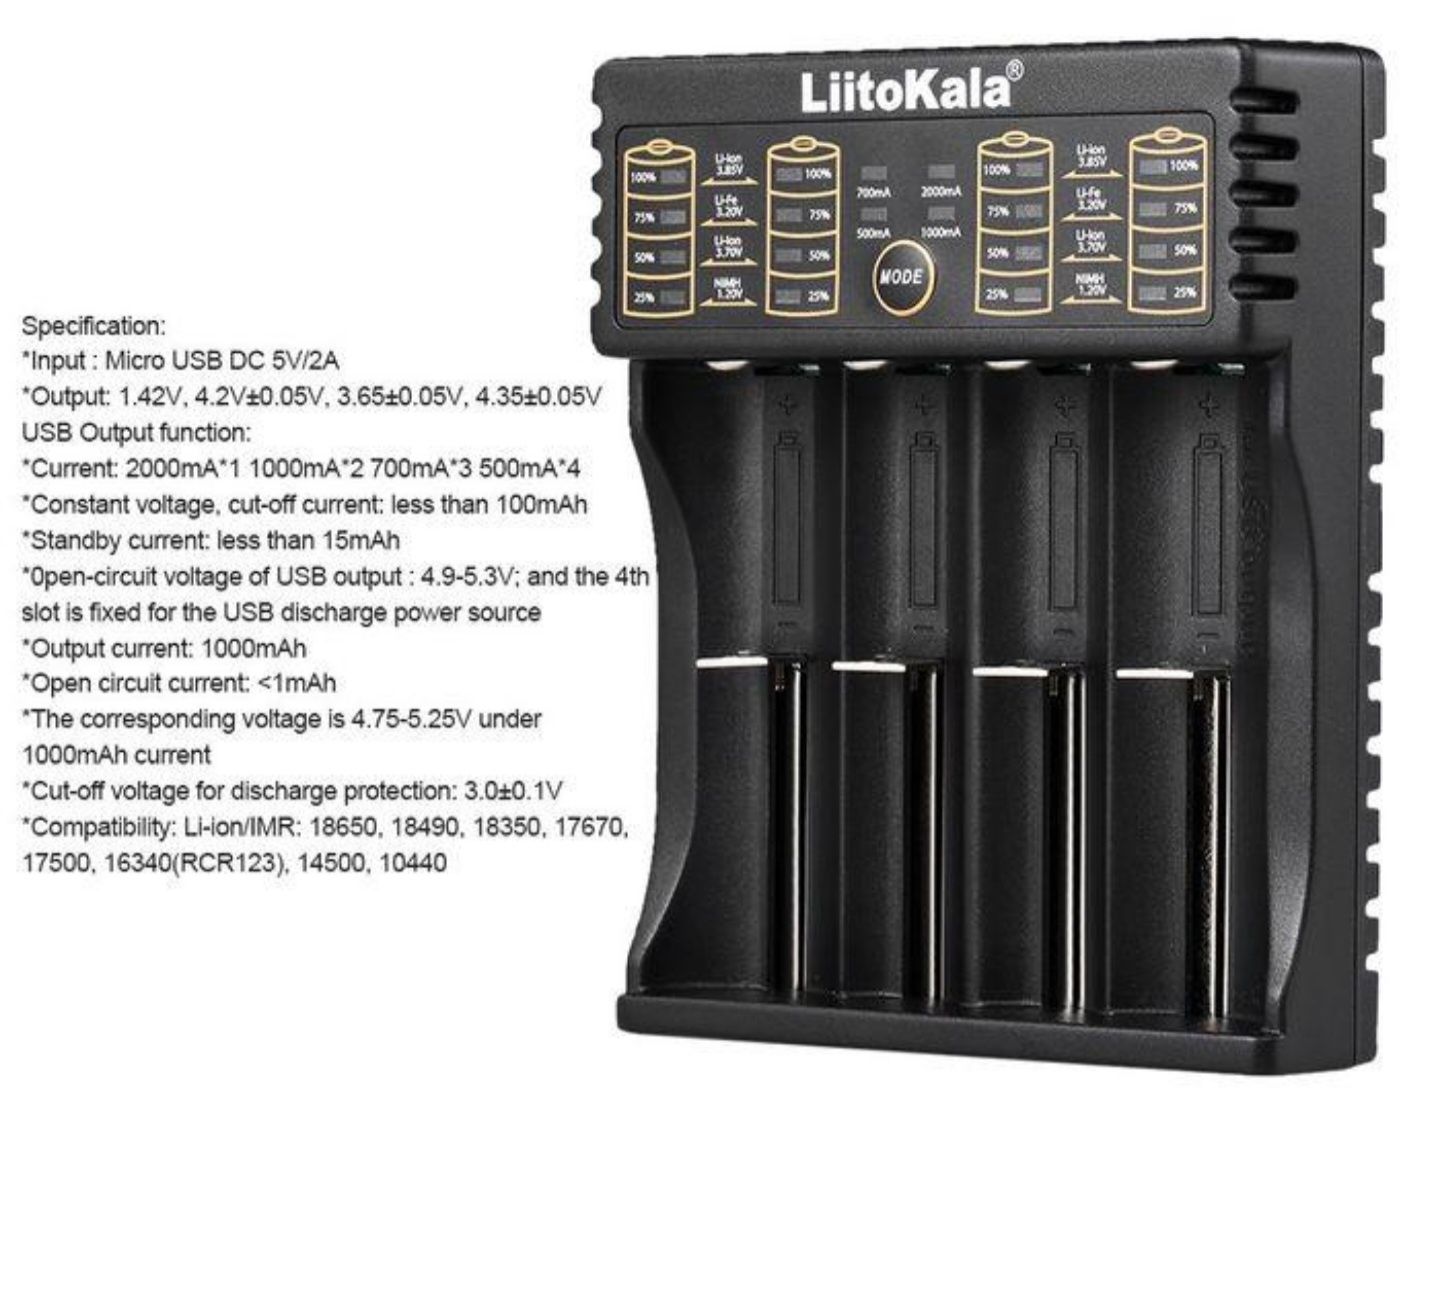 Зарядний пристрій Оригінал Liitokala Lii-402 литокала 18650 і т. д.